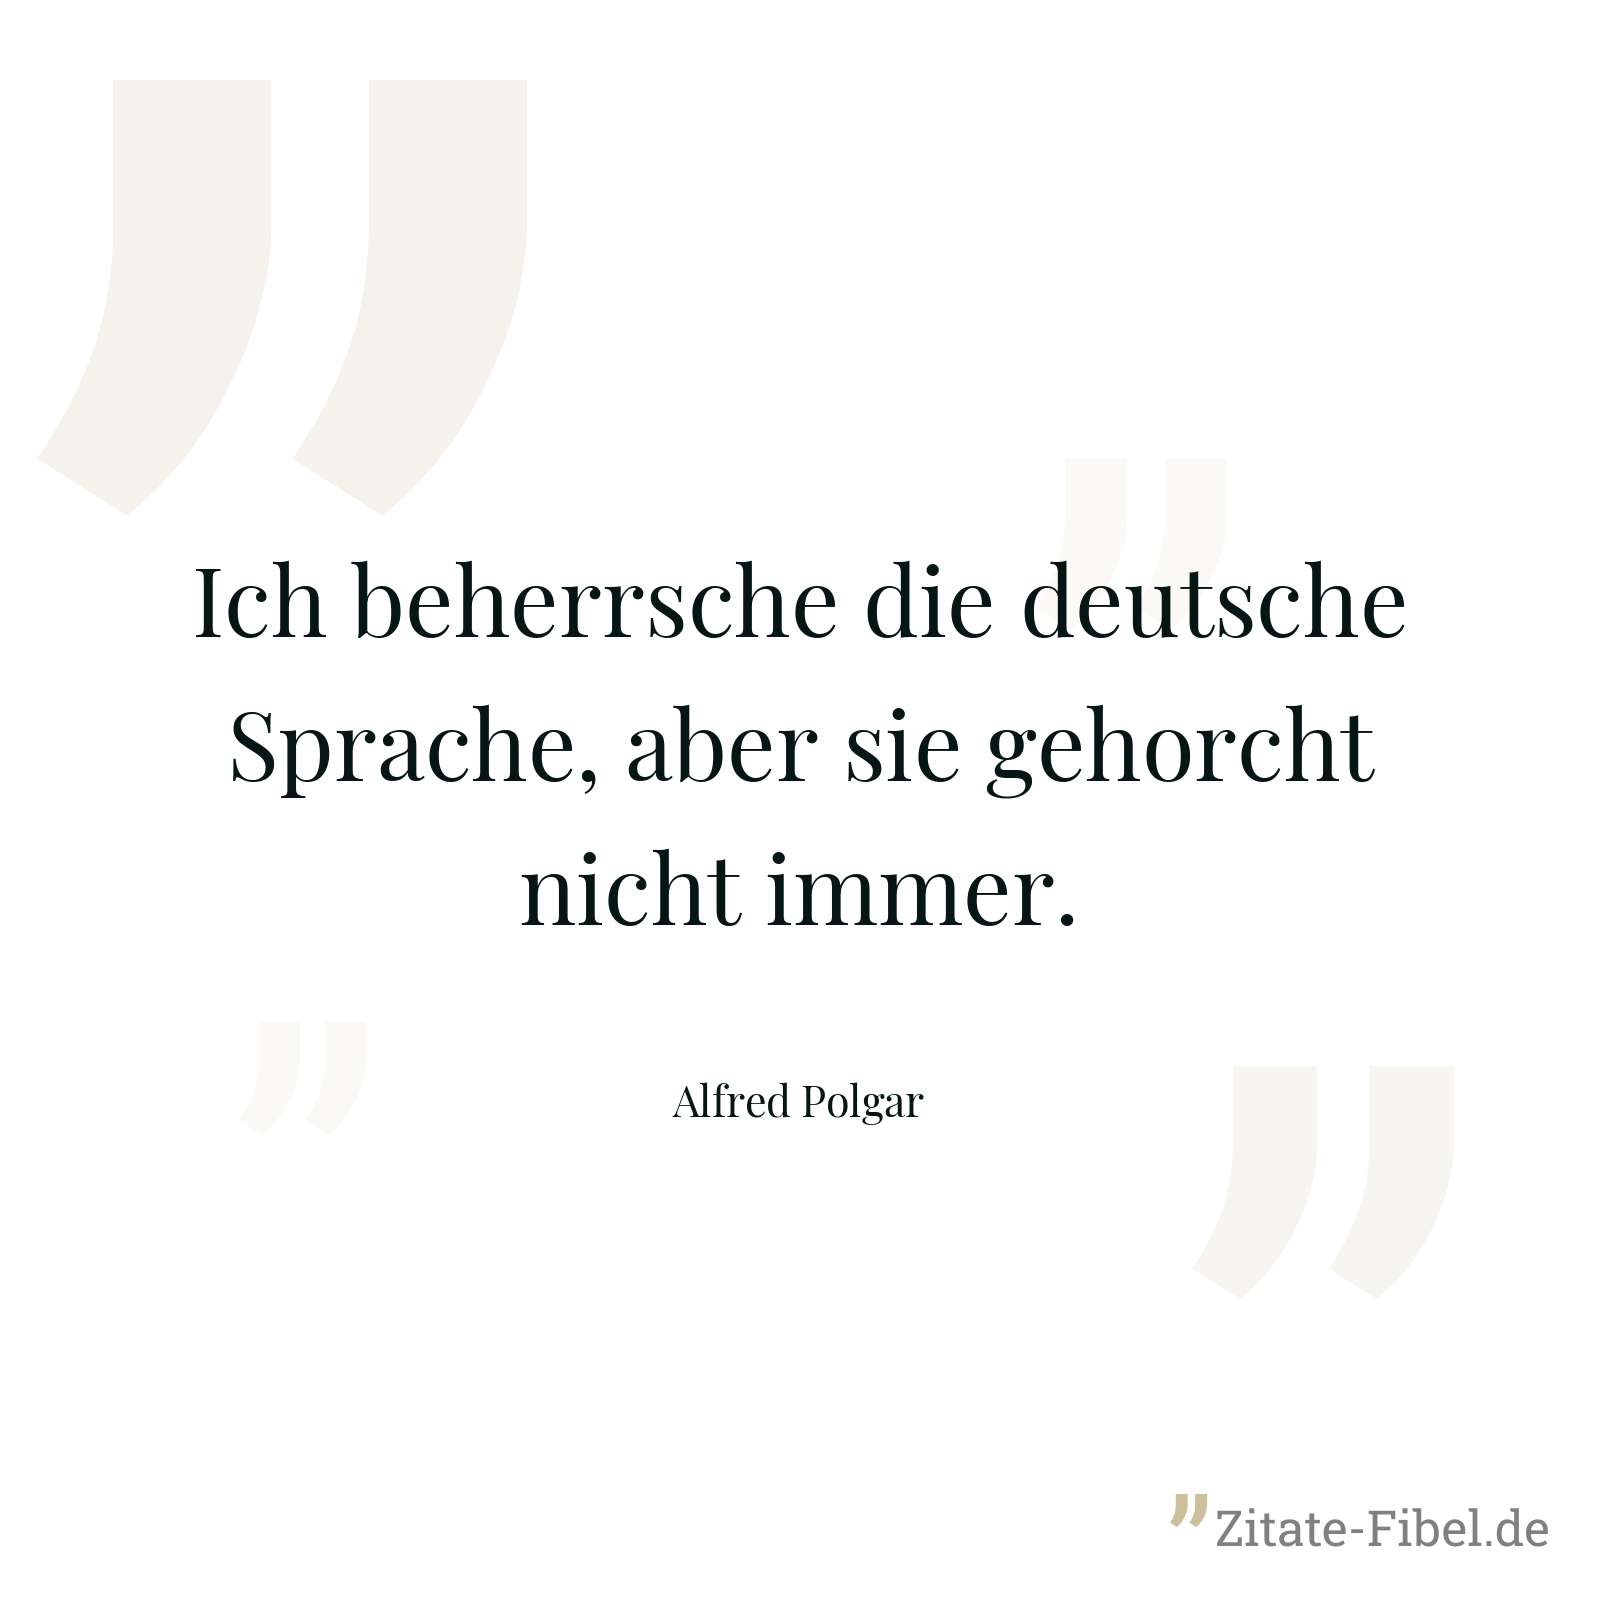 Ich beherrsche die deutsche Sprache, aber sie gehorcht nicht immer. - Alfred Polgar